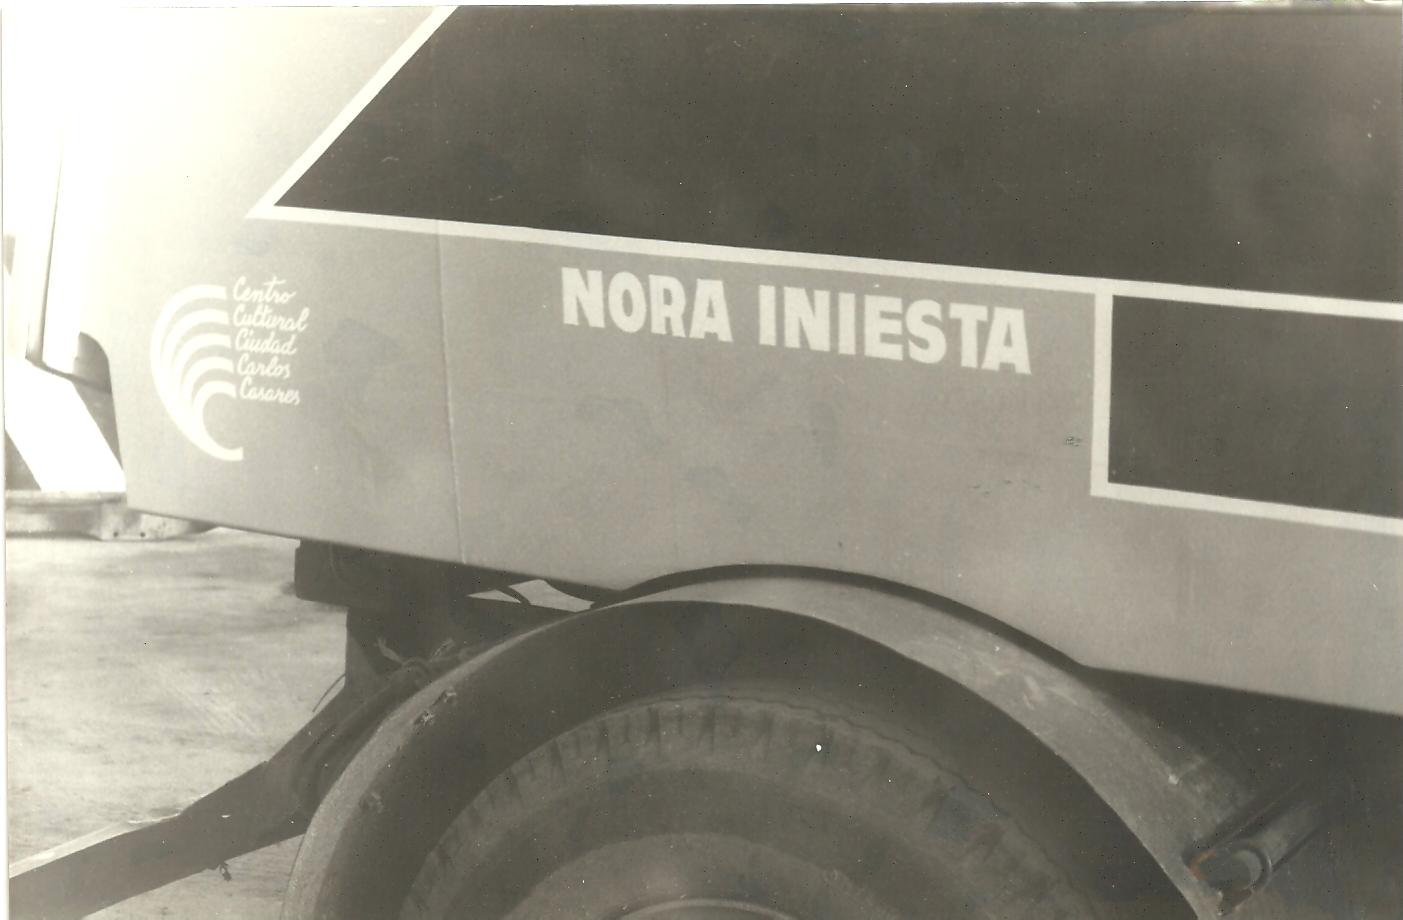 El camión recolector, detalle, Carlos Casares 1989